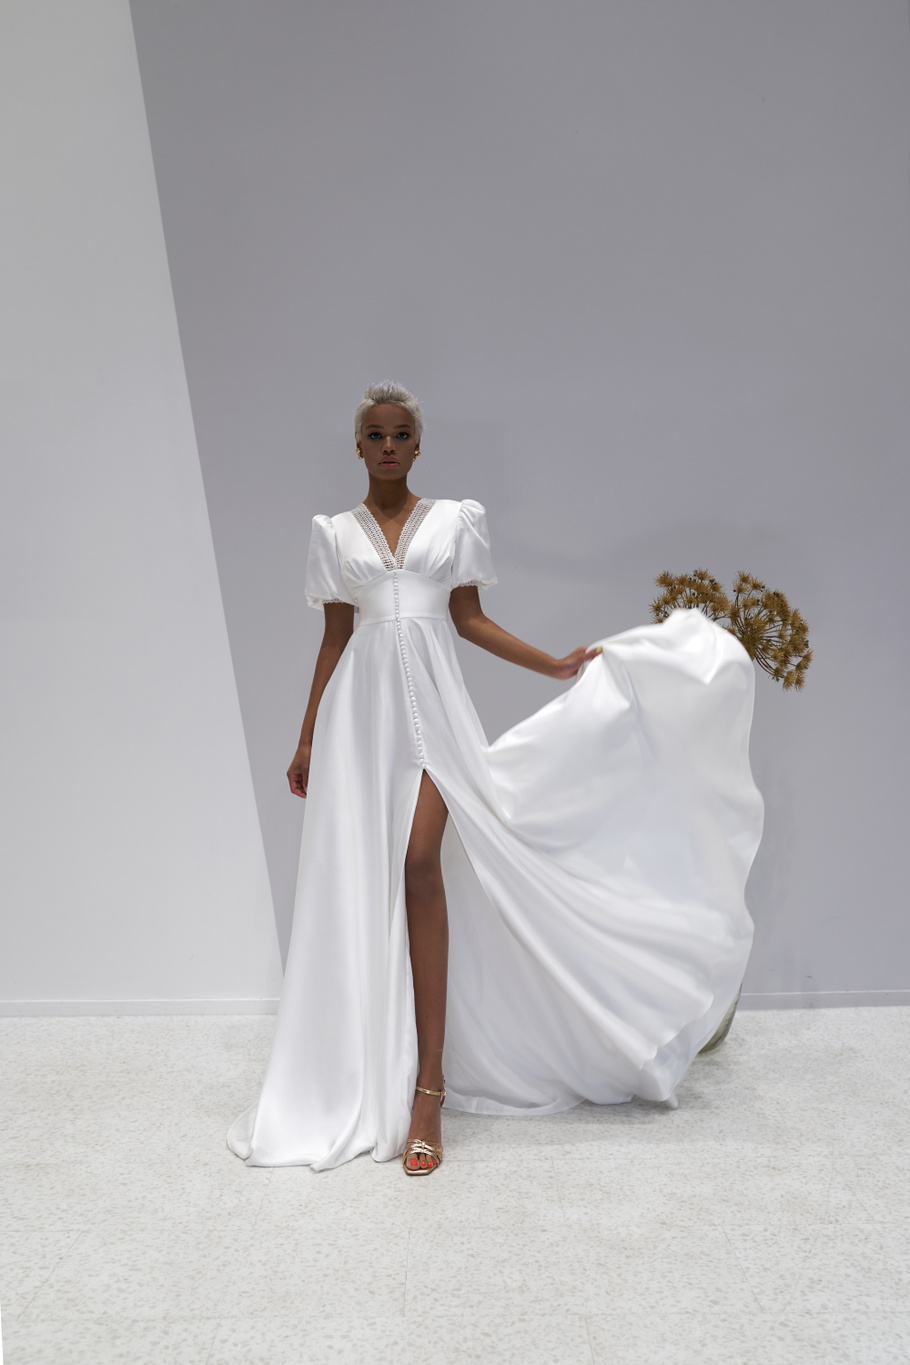 Свадебное платье «Орандж» Марта — купить в Воронеже платье Орандж из коллекции 2021 года